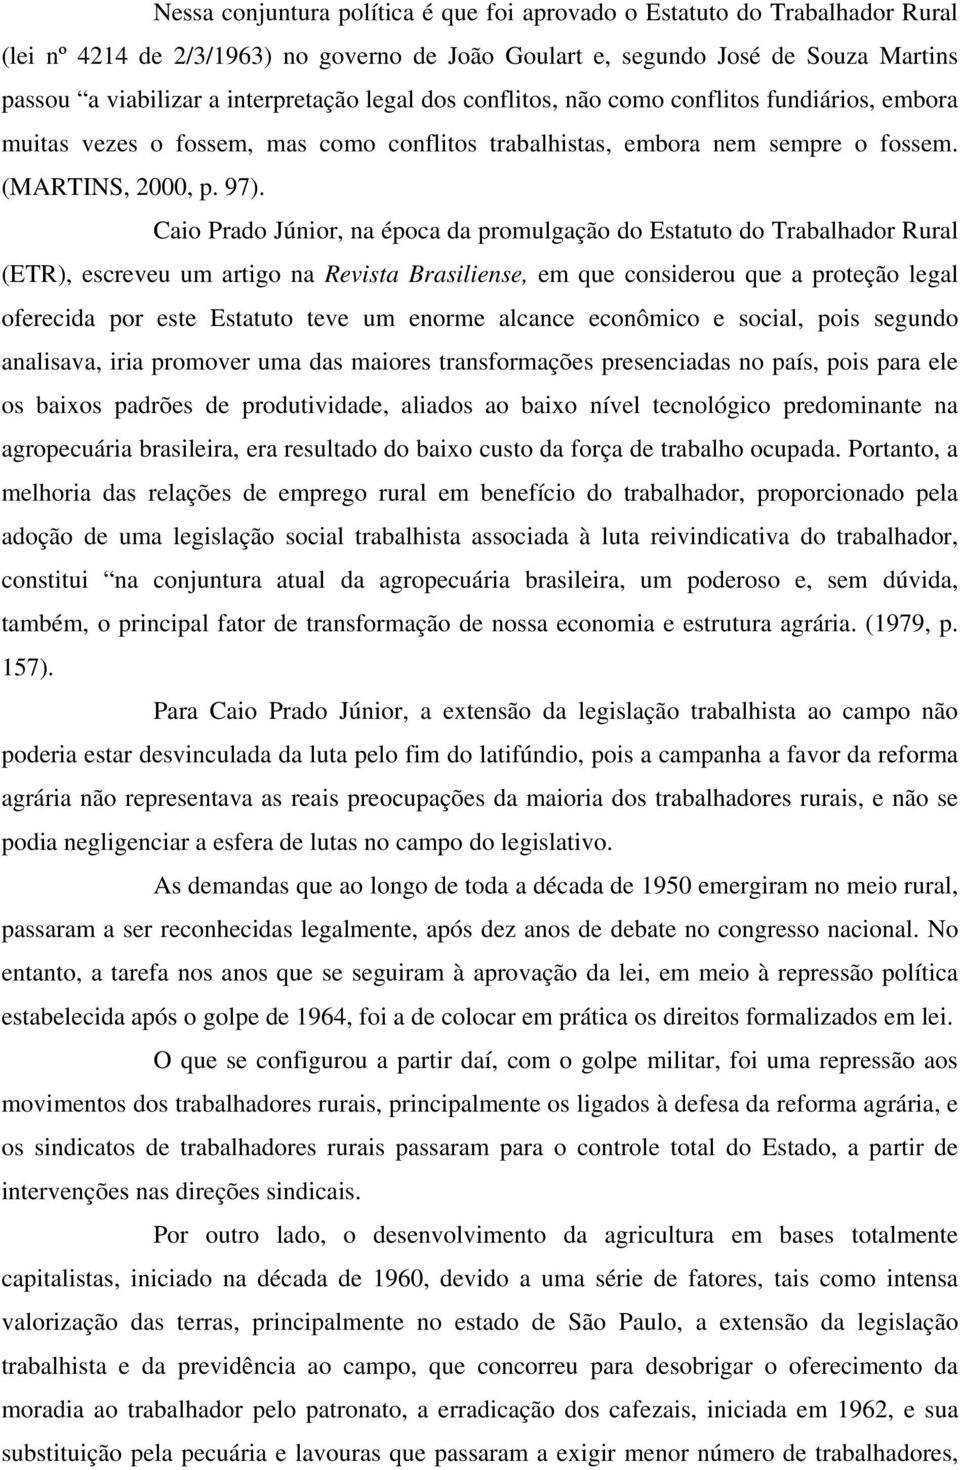 Caio Prado Júnior, na época da promulgação do Estatuto do Trabalhador Rural (ETR), escreveu um artigo na Revista Brasiliense, em que considerou que a proteção legal oferecida por este Estatuto teve